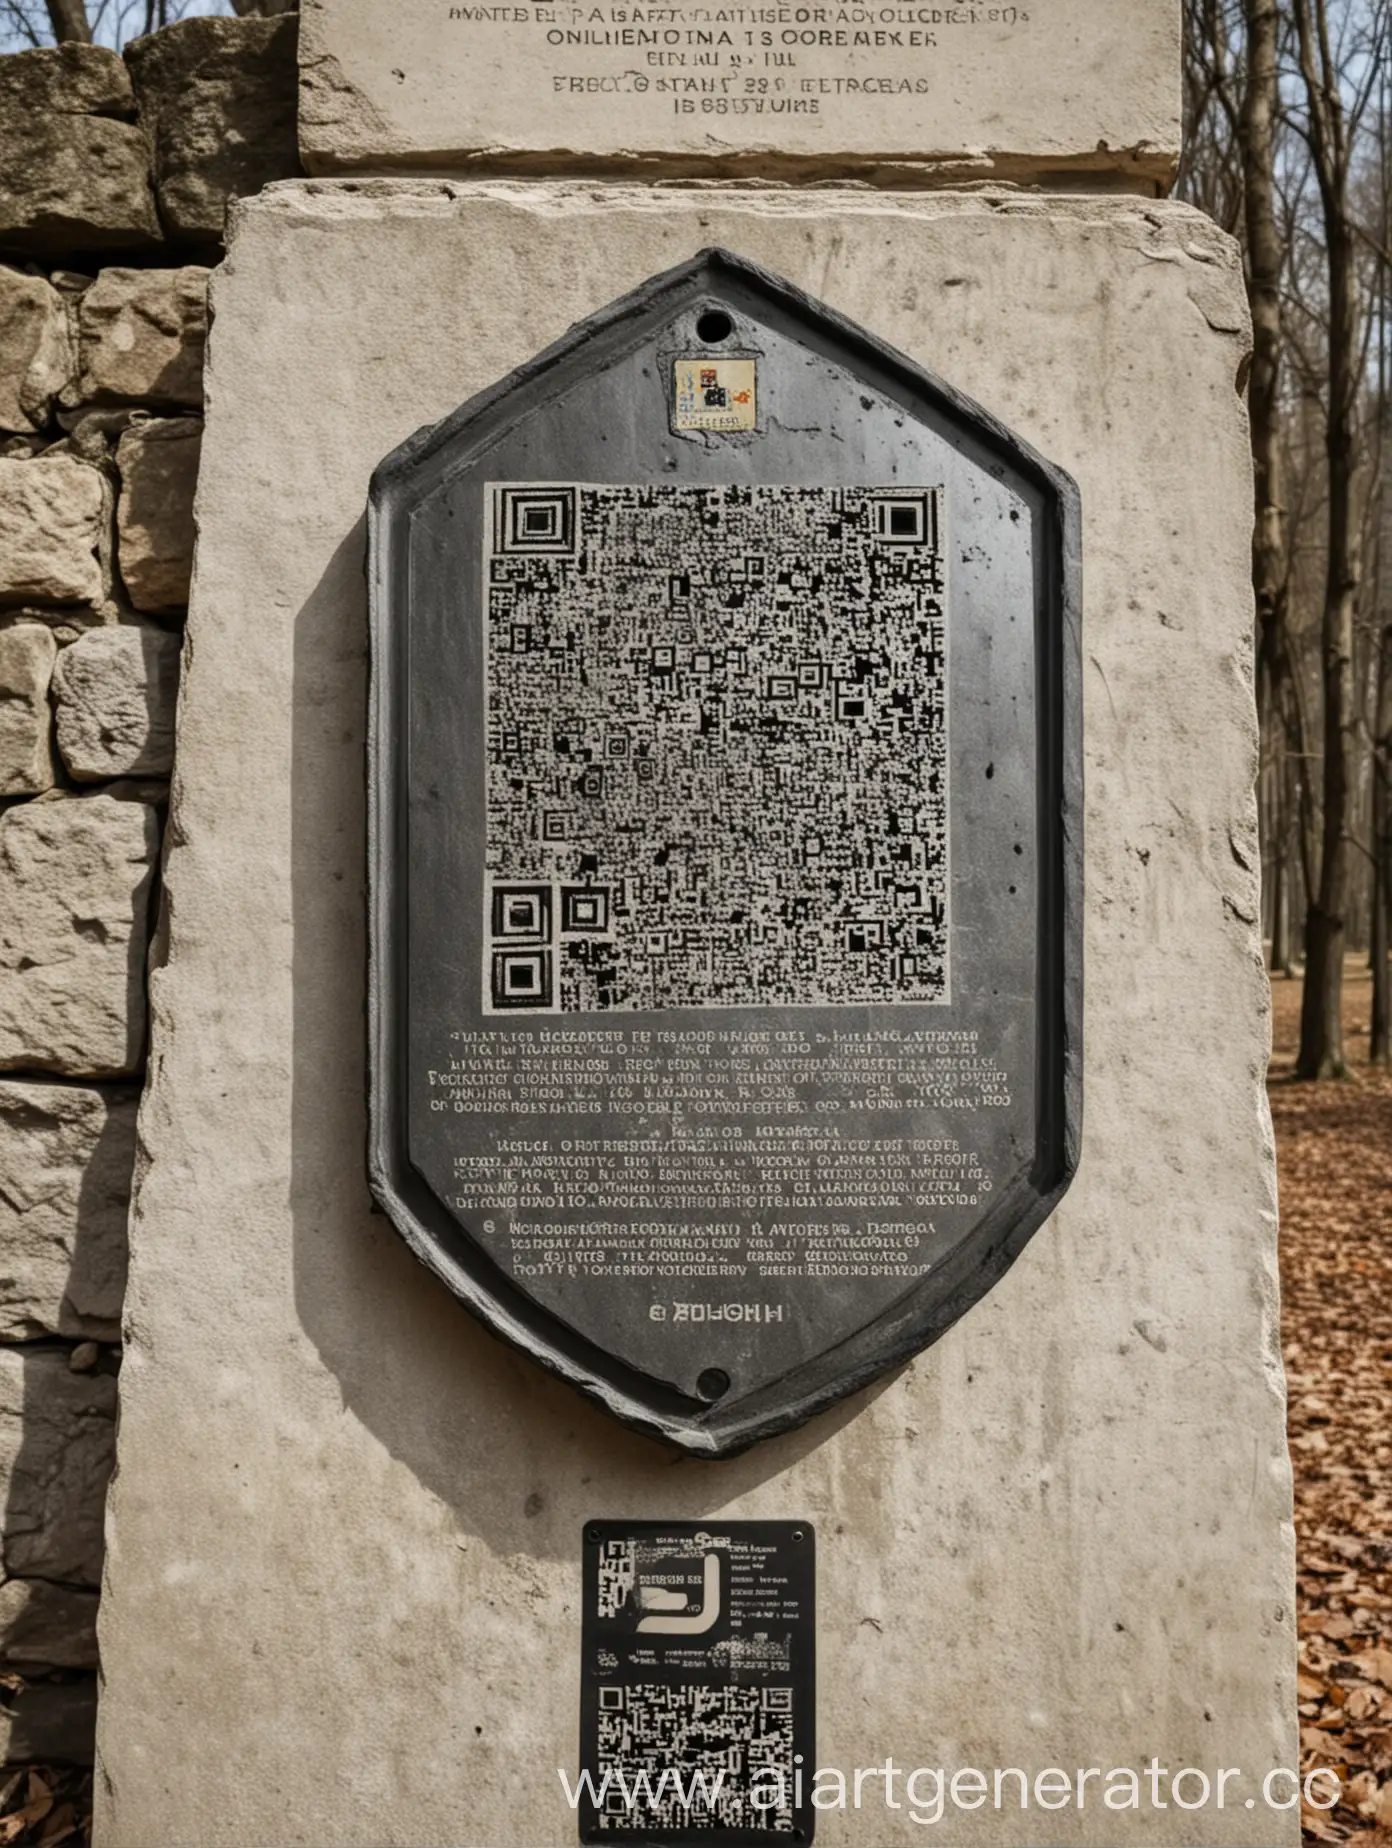 возле старого памятника стоит информационный бейджик с описанием памятника и qr-кодом